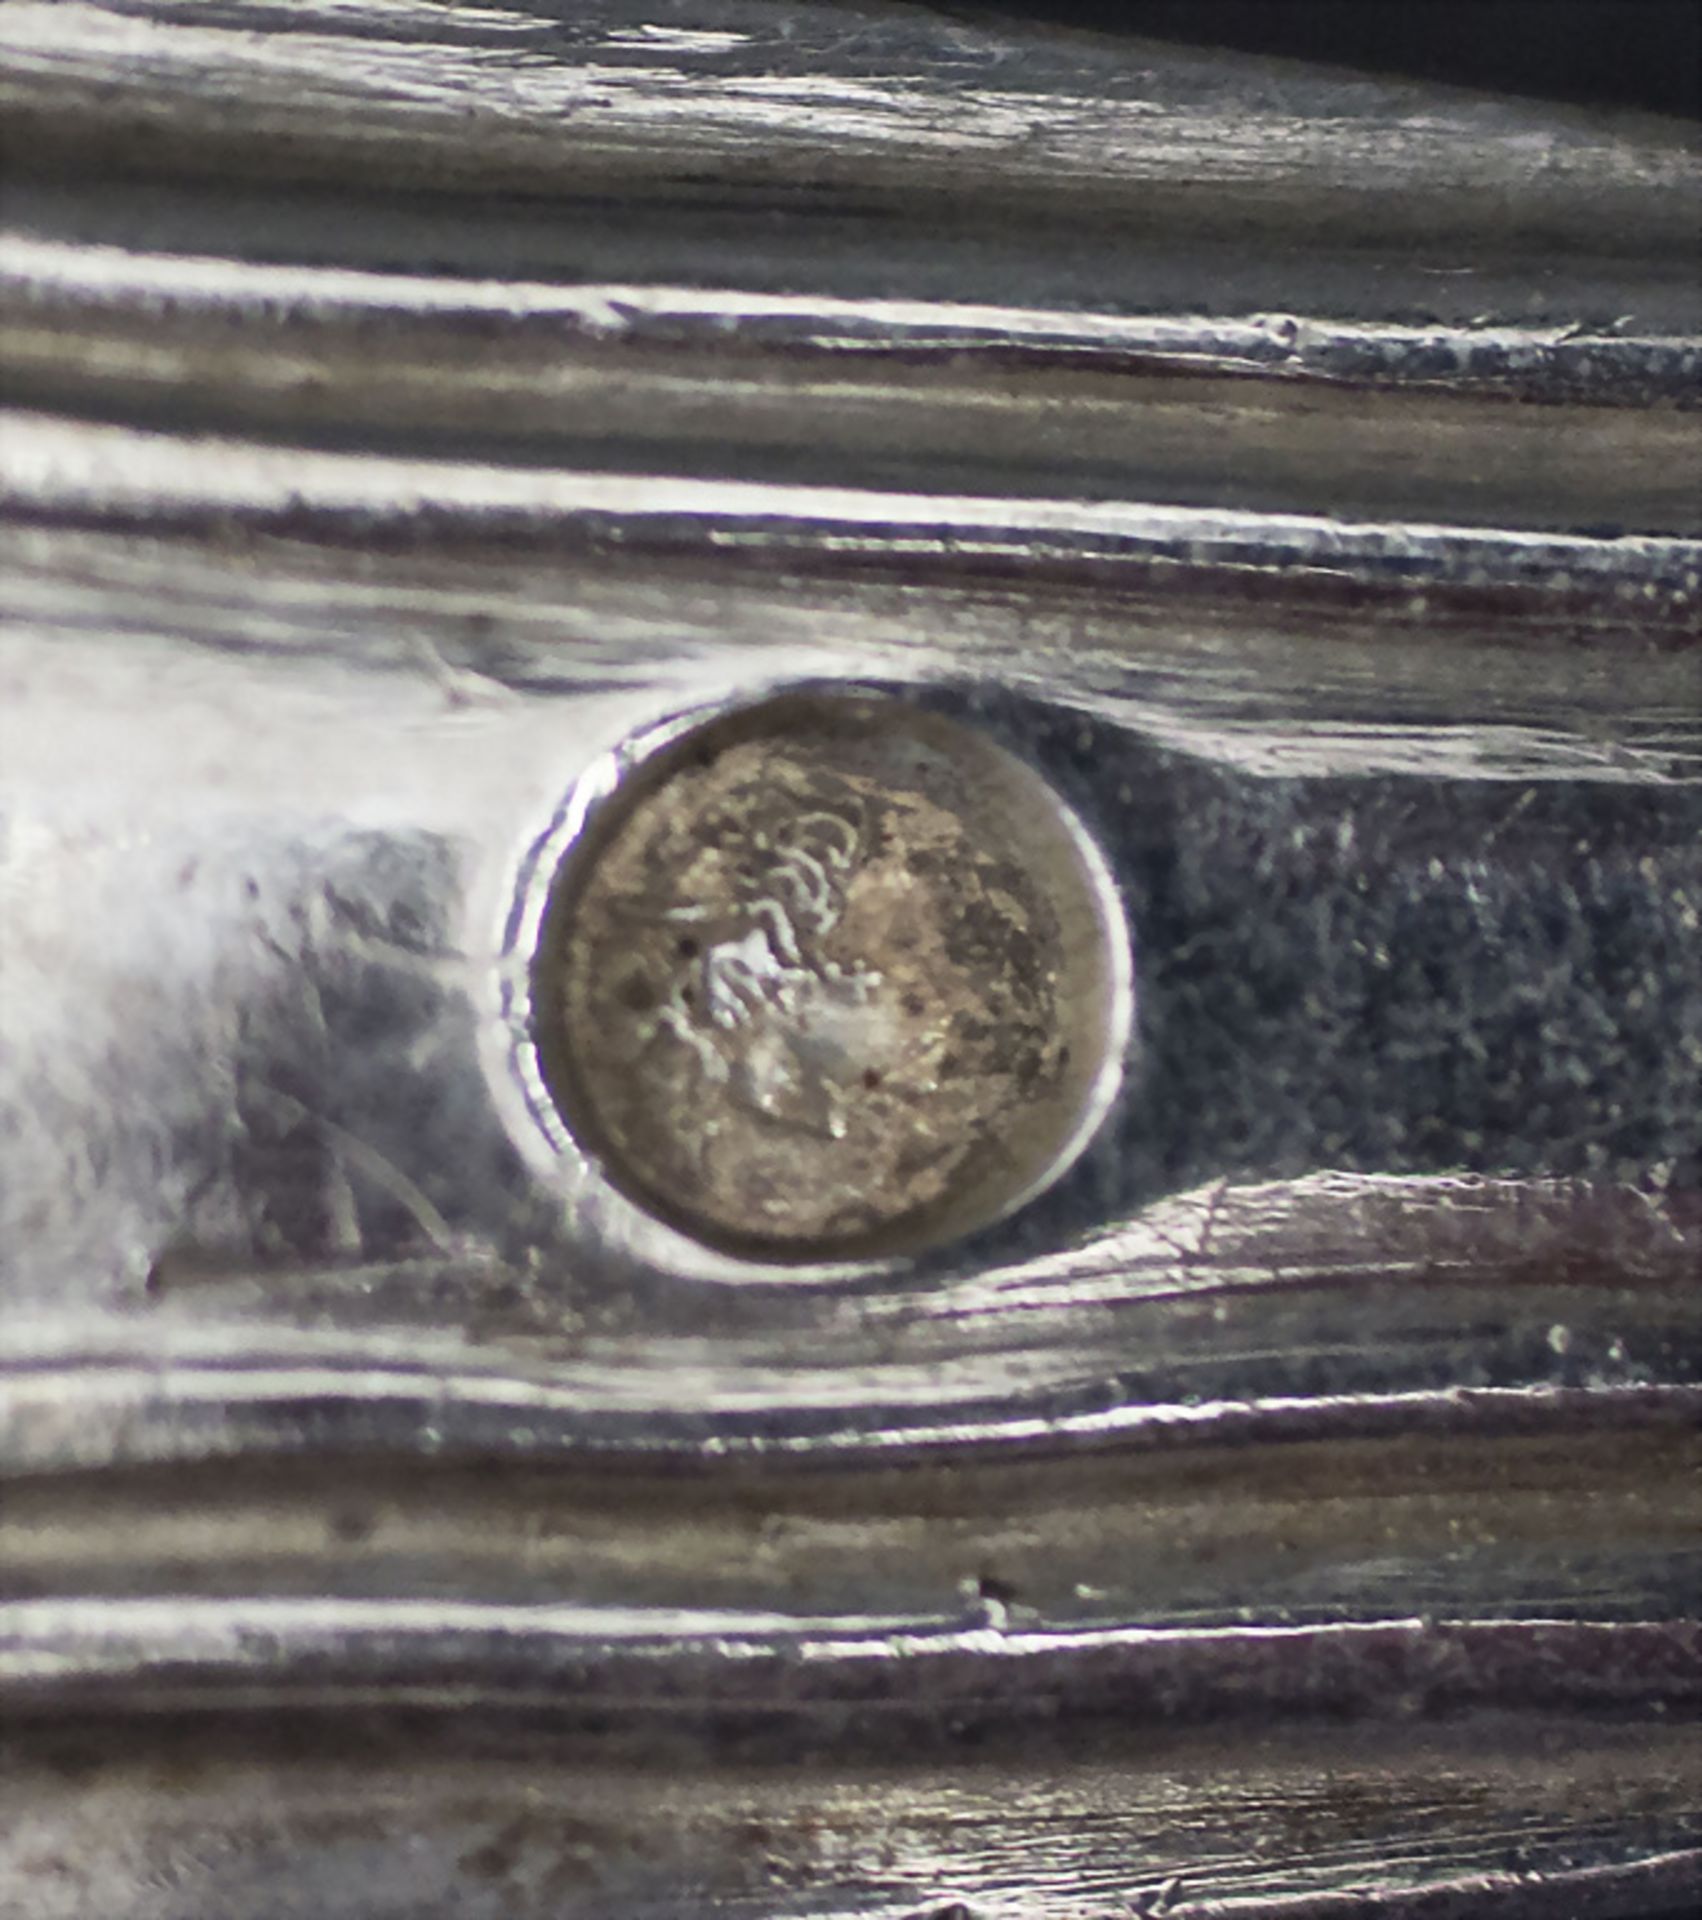 24-tlg. Silberbesteck / A 24-piece set of silver cutlery, Louis Nicolas Alban, Paris, 1834-1839 - Image 6 of 7